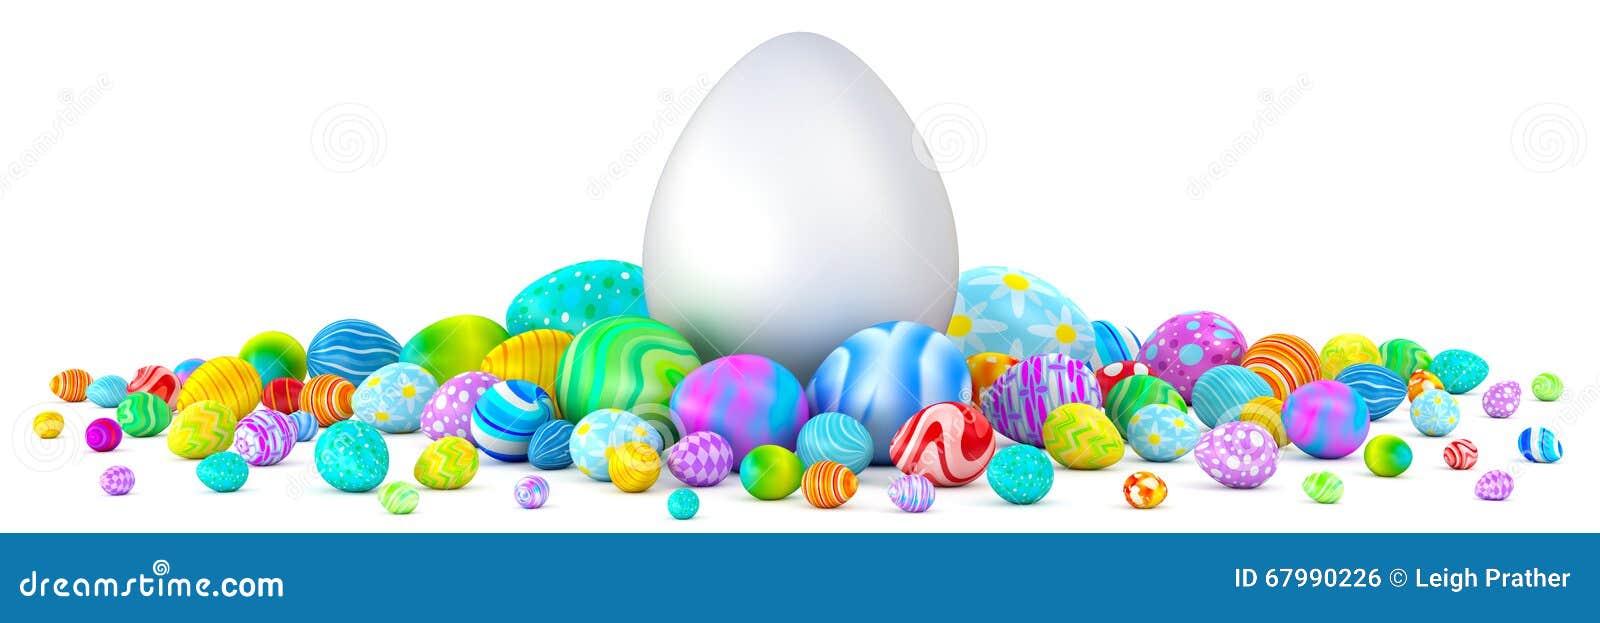 pile of easter eggs surrounding a giant white egg